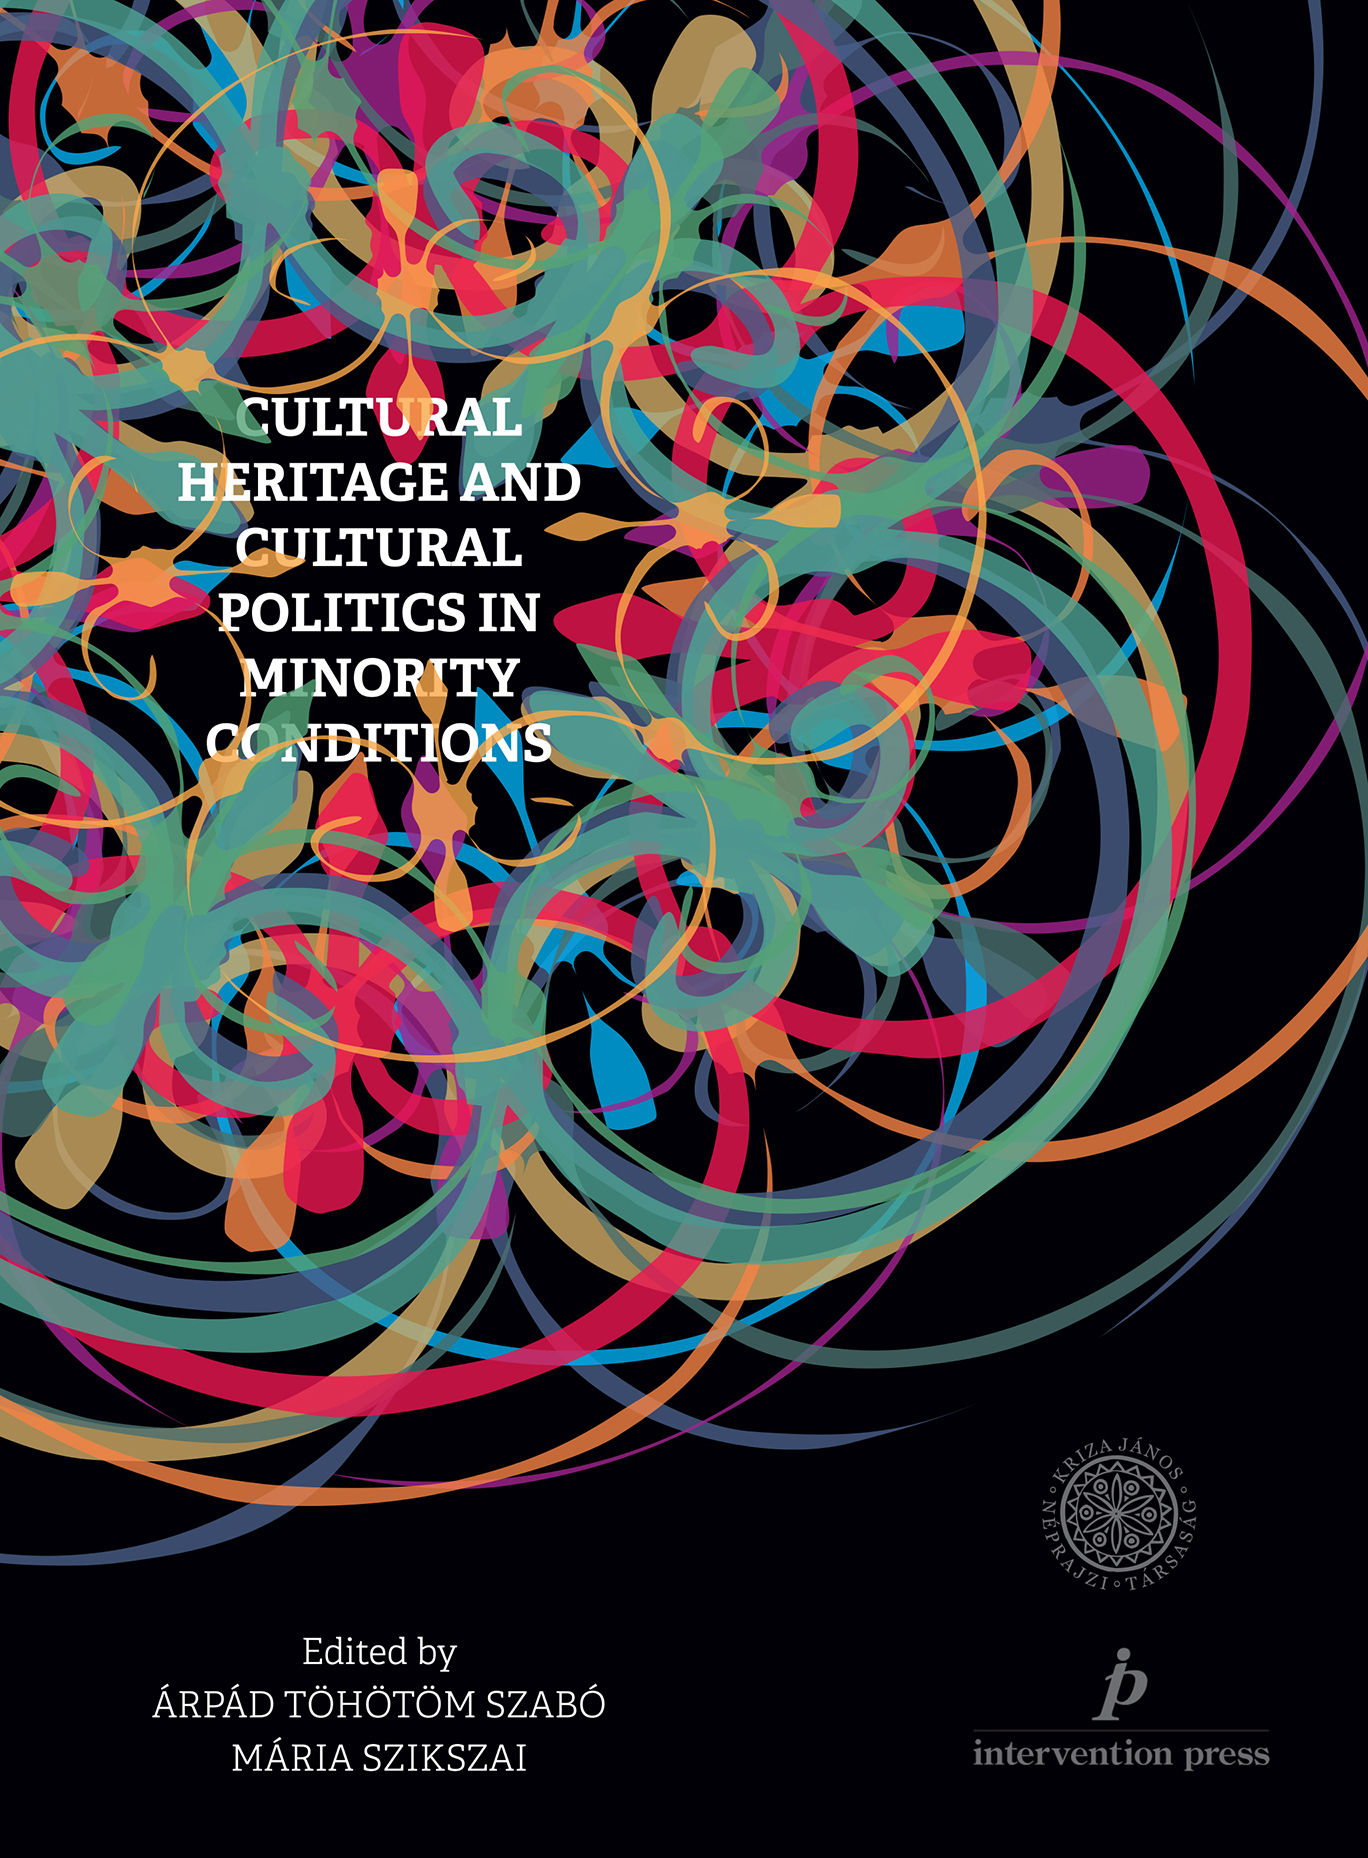 [Patromoniul cultural și politici culturale în contexte minoritare] Cultural Heritage and Cultural Politics in Minority Conditions